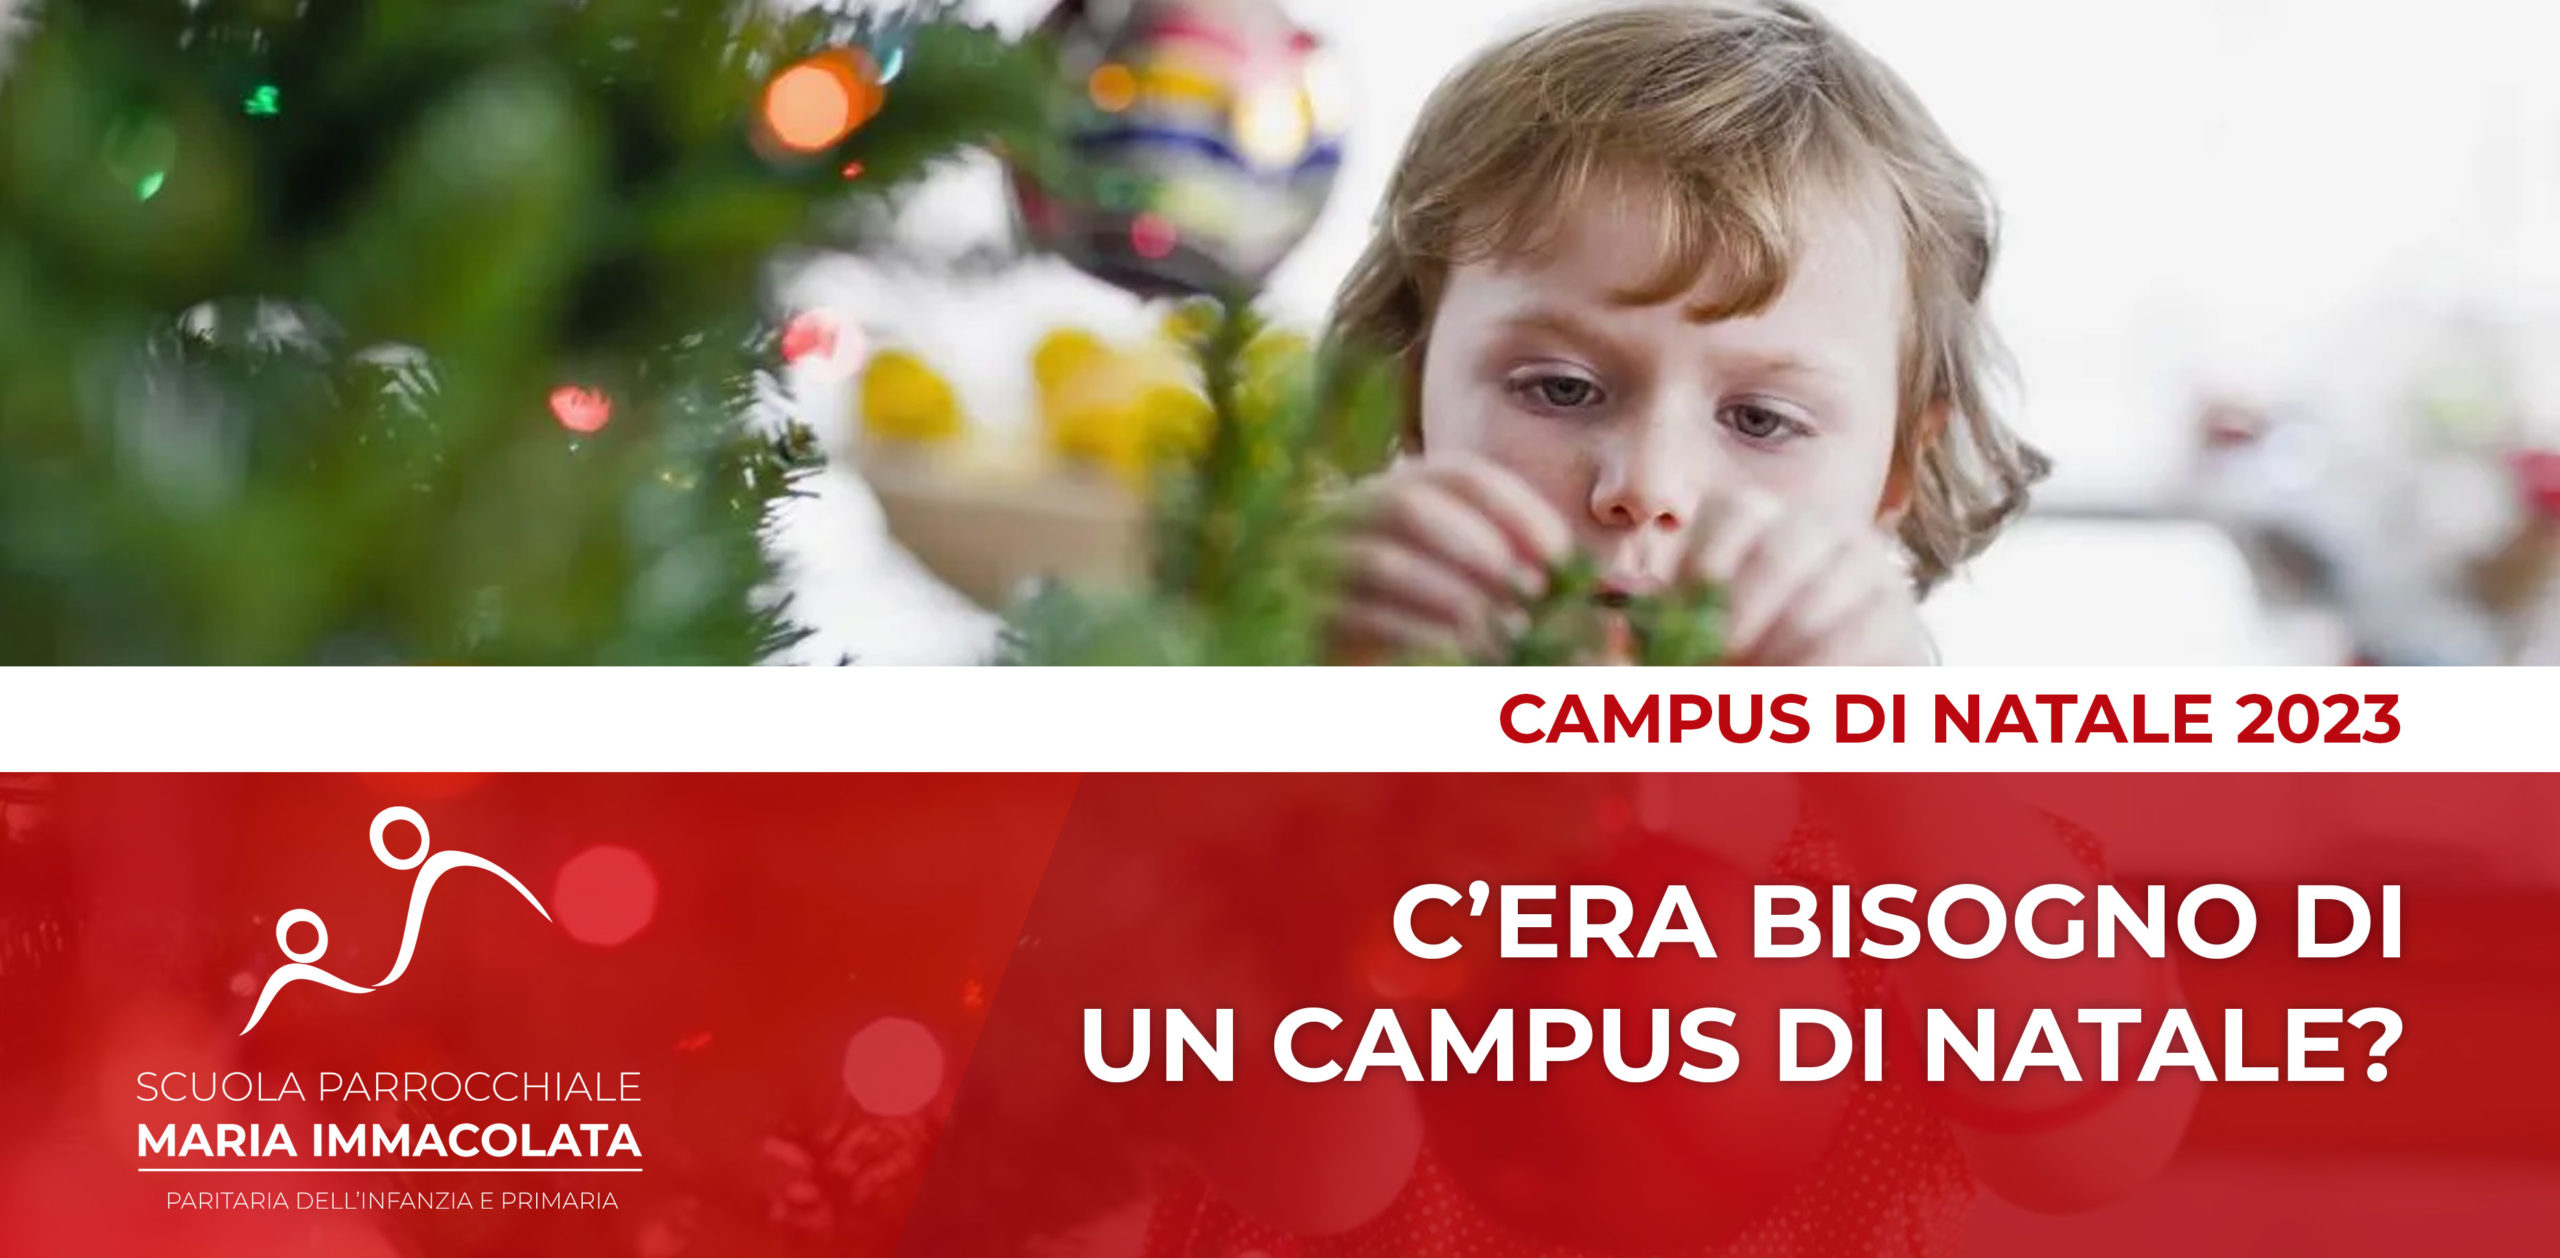 Campus di Natale: il senso di una iniziativa